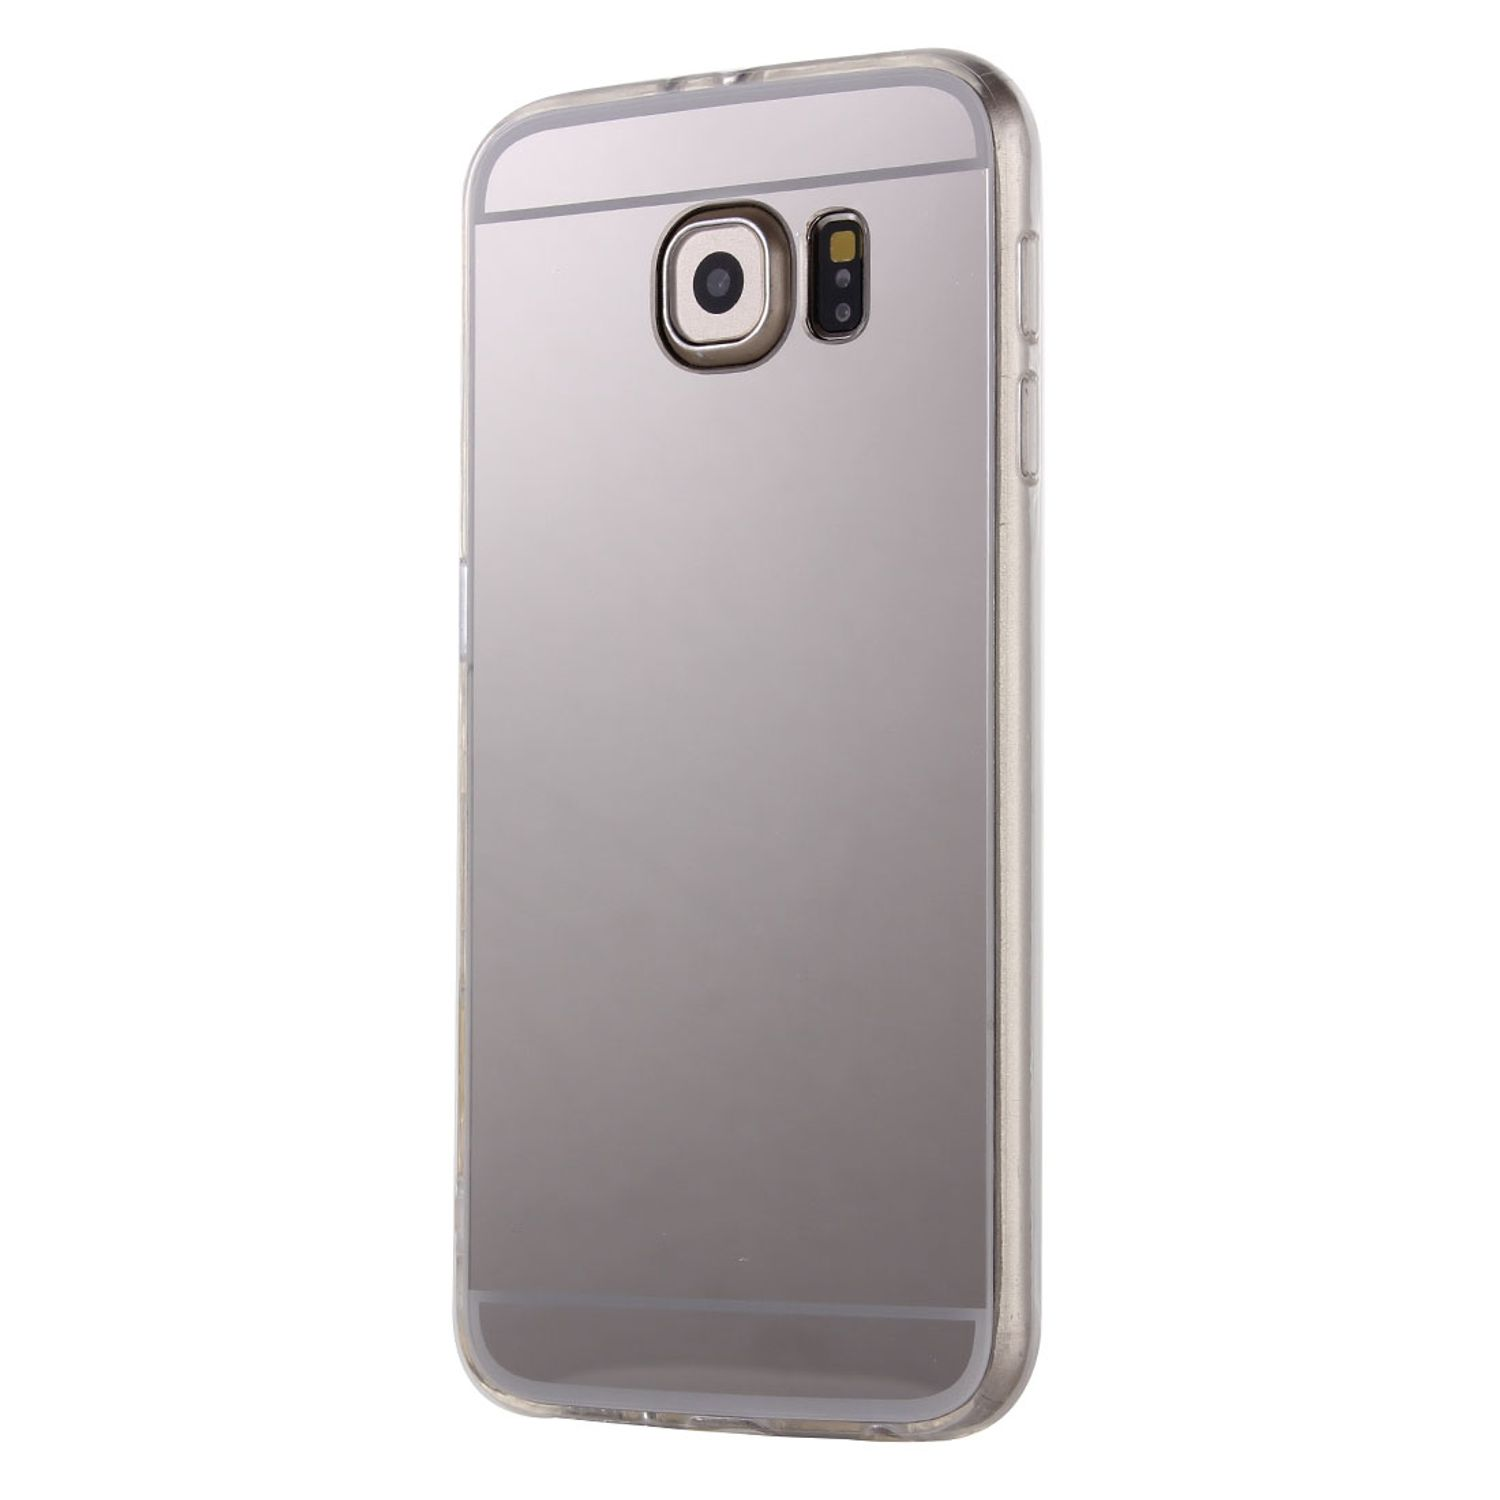 KÖNIG Edge, DESIGN Samsung, Schutzhülle, Silber S6 Galaxy Backcover,